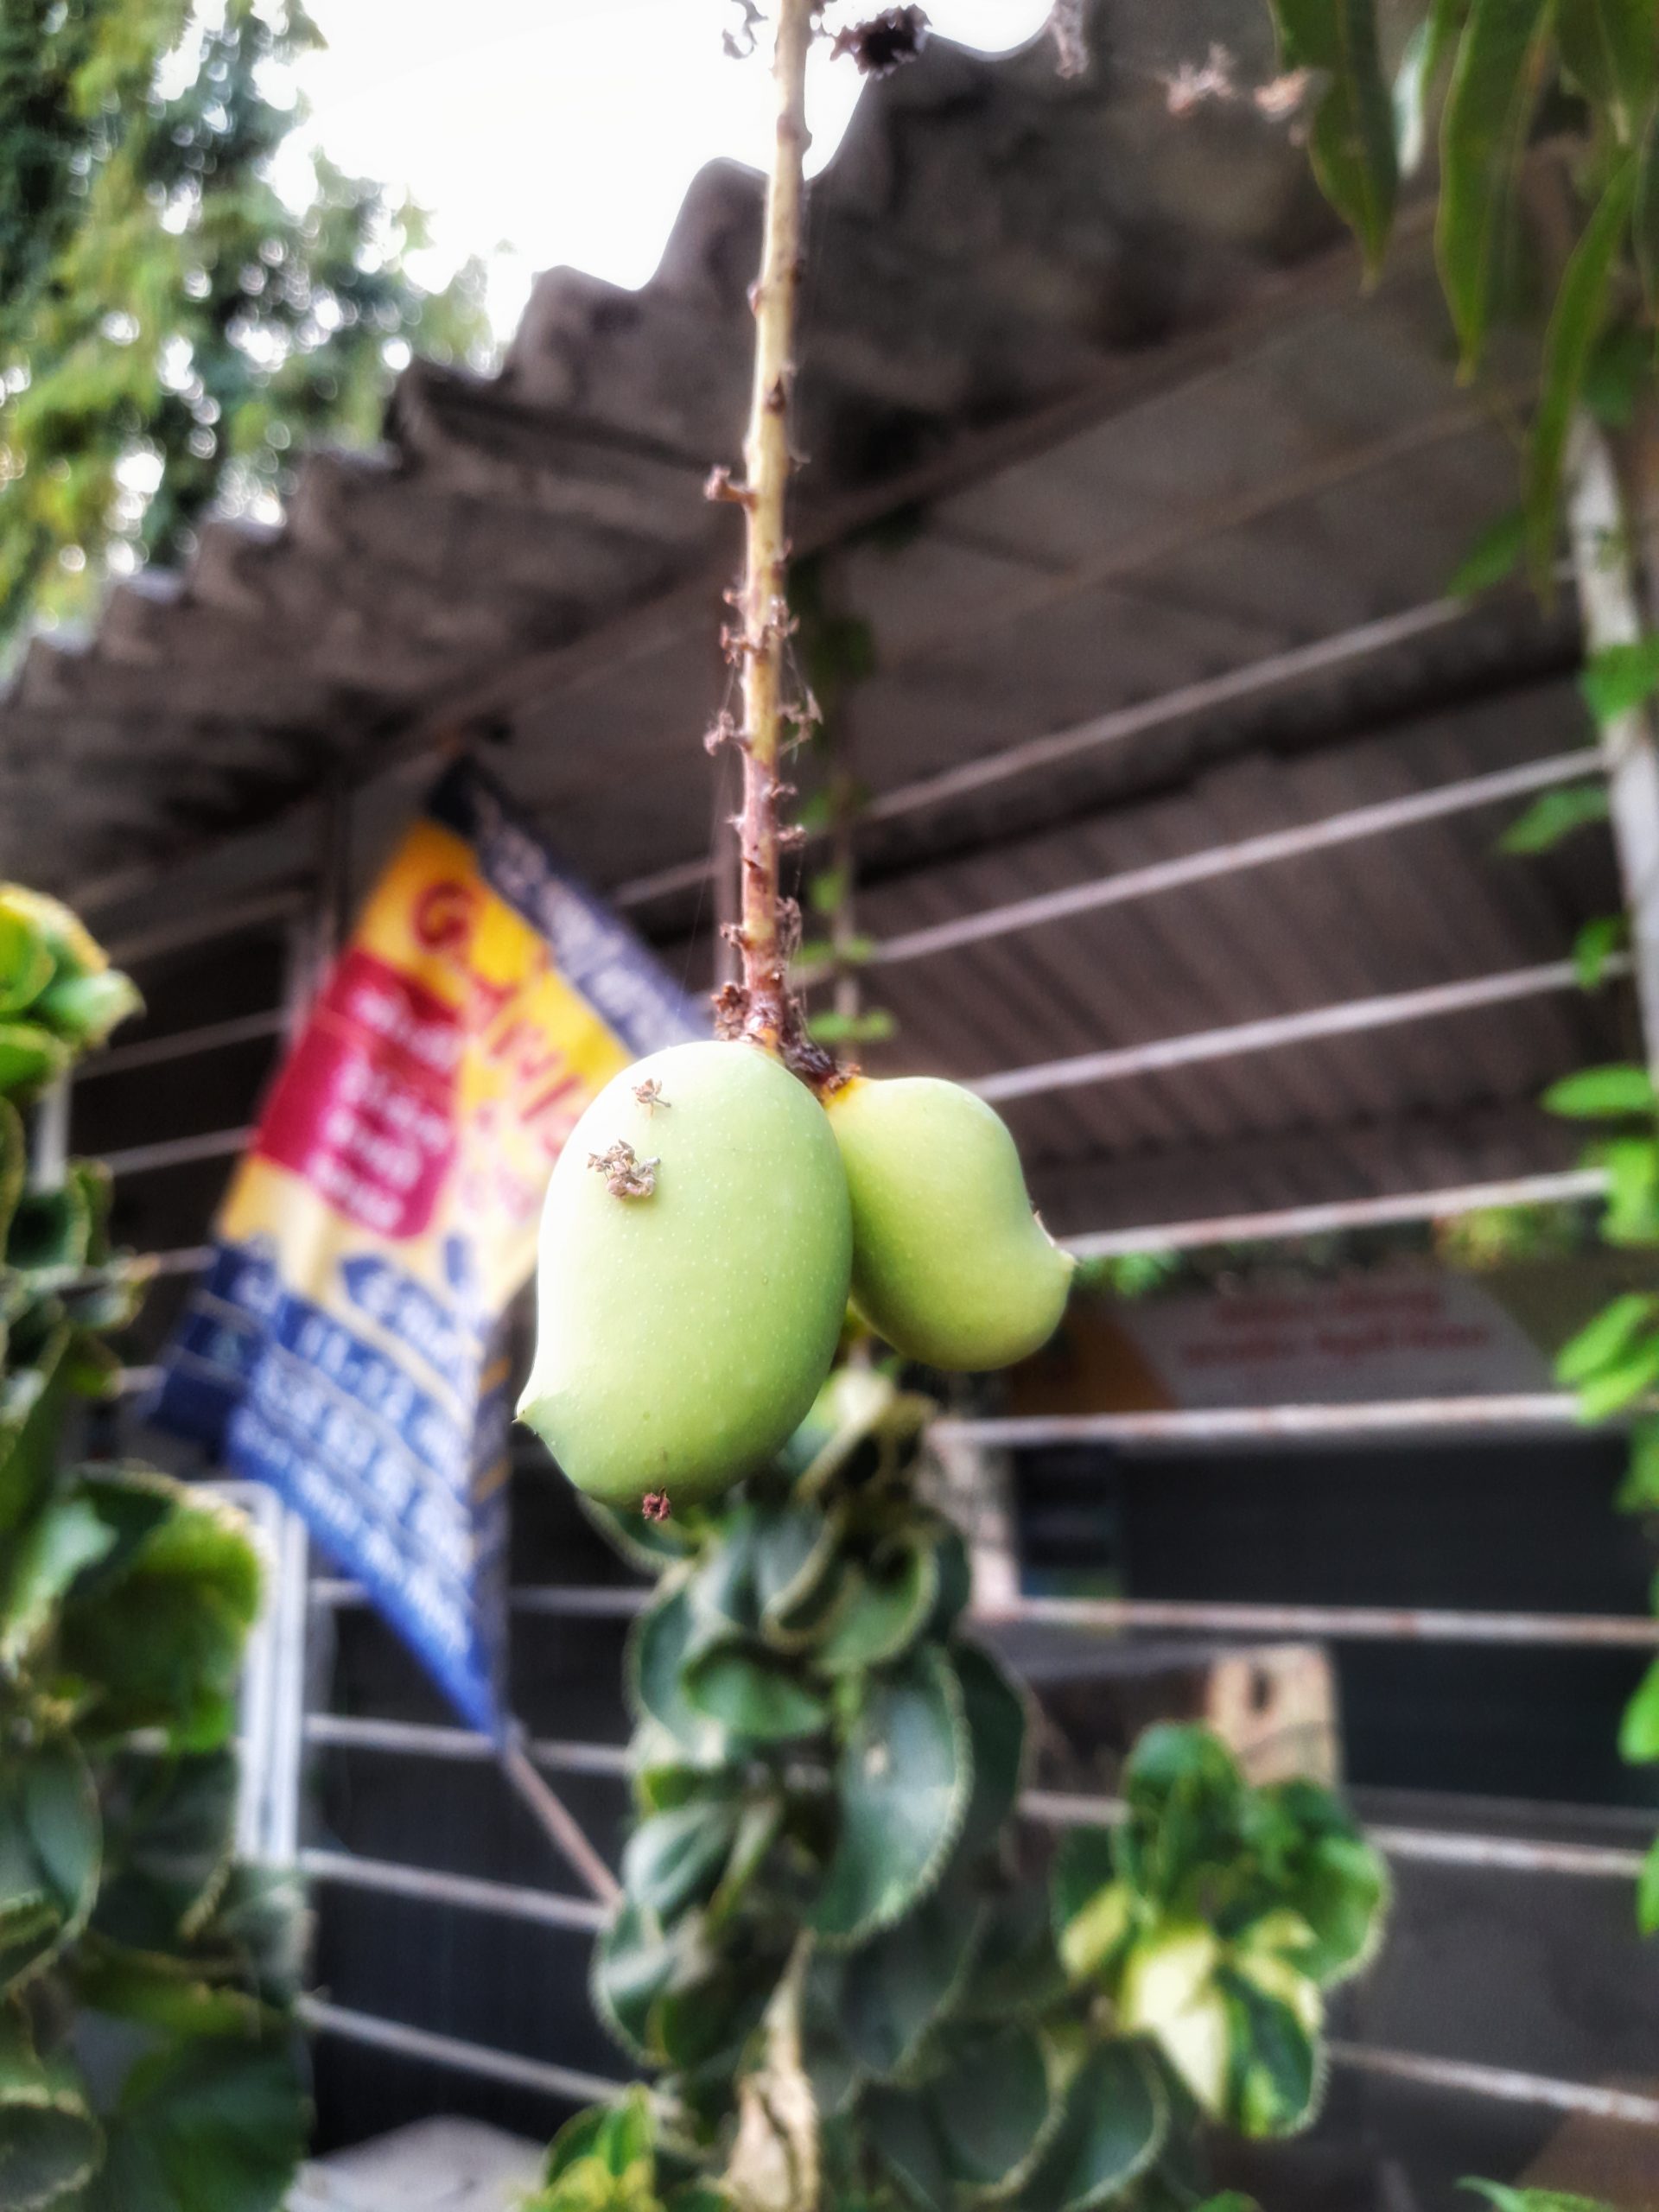 Hanging green mangoes